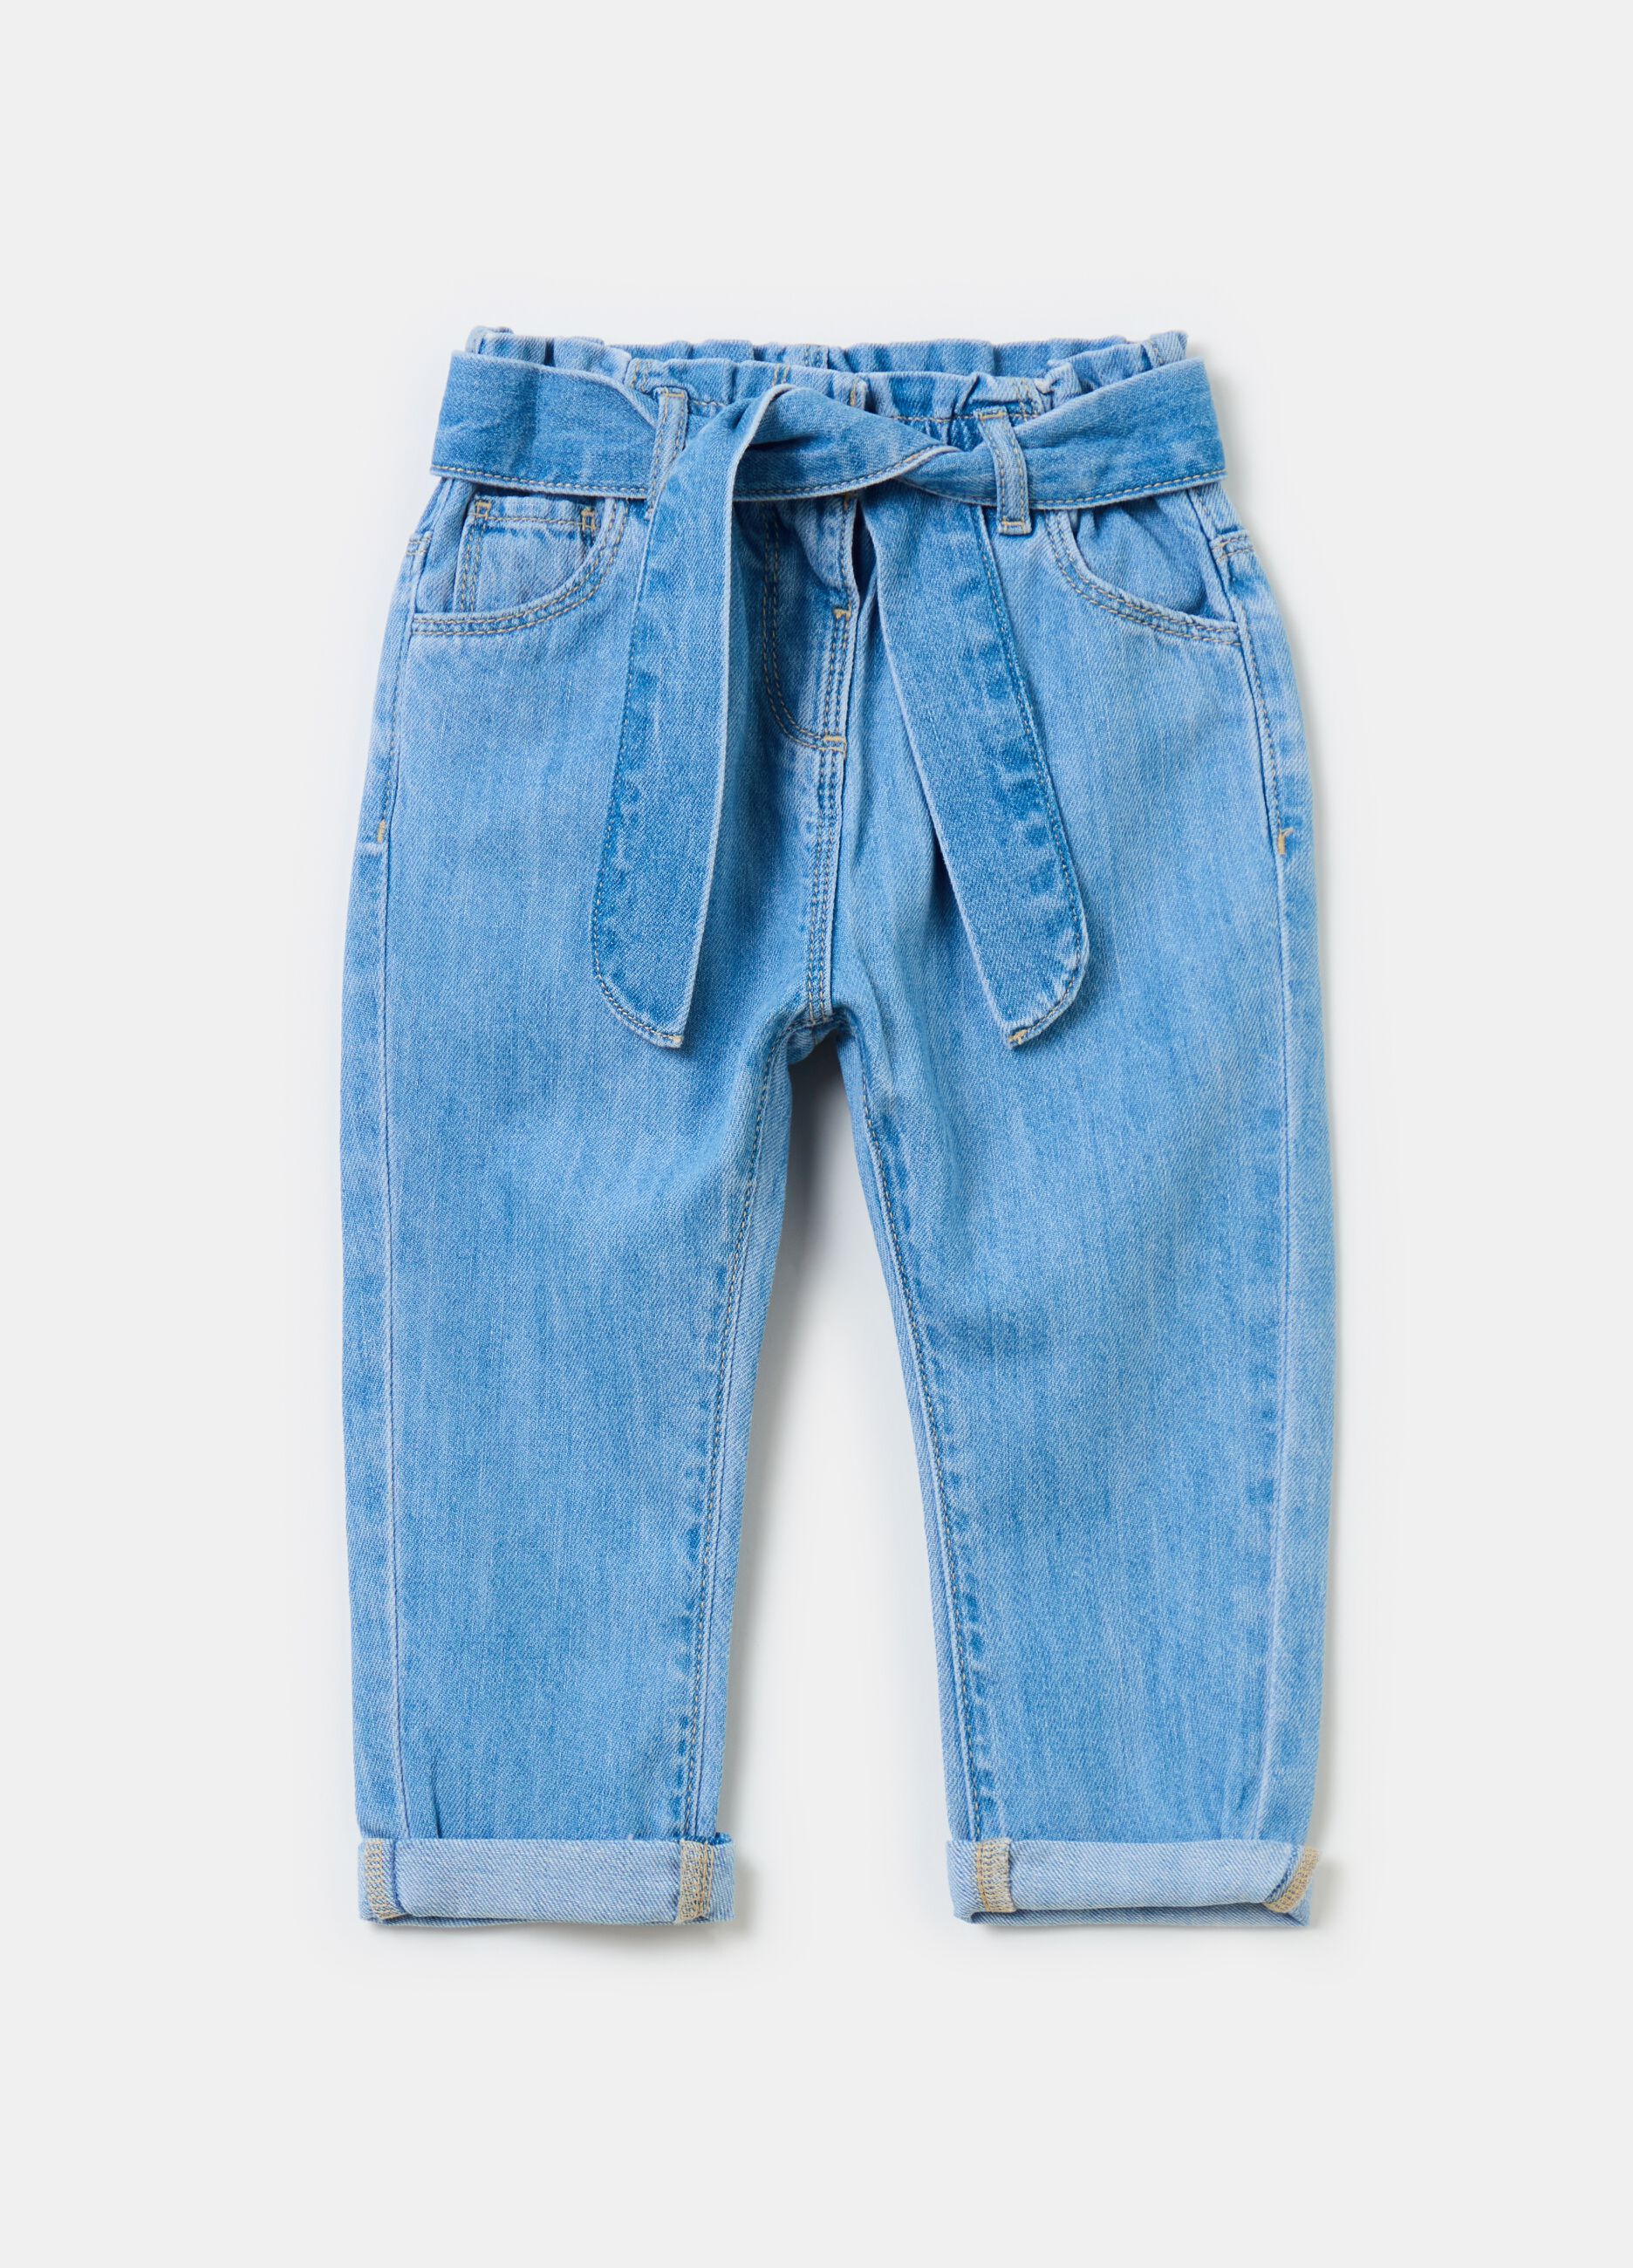 Five-pocket jeans with belt